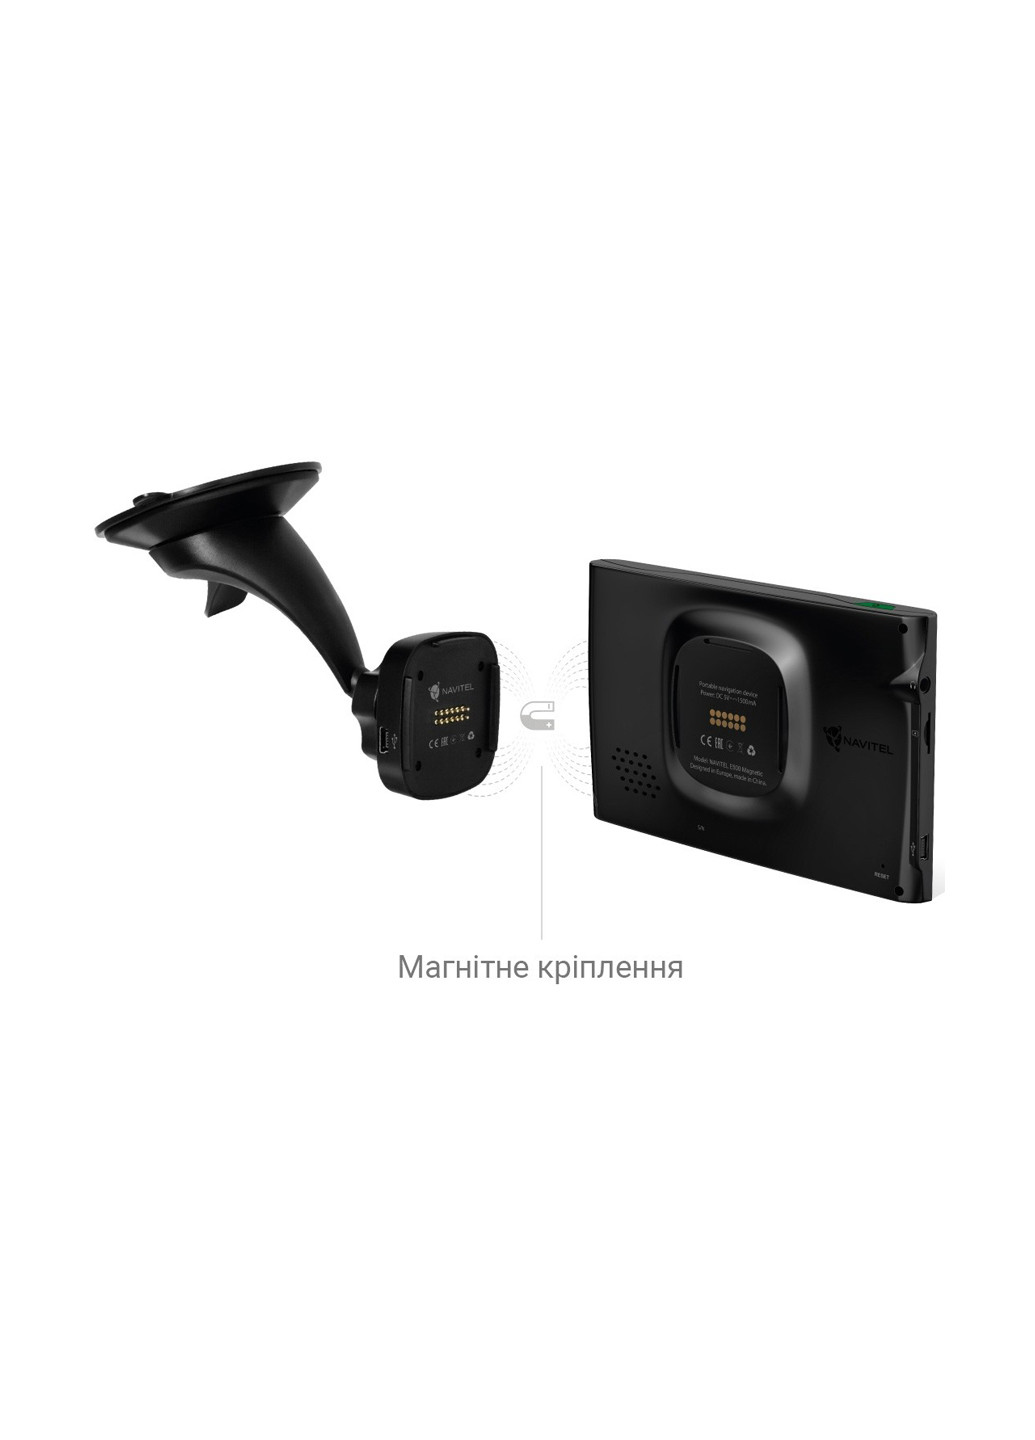 Автомобільний GPS навігатор Е500 Magnetic Navitel e500m (133781343)